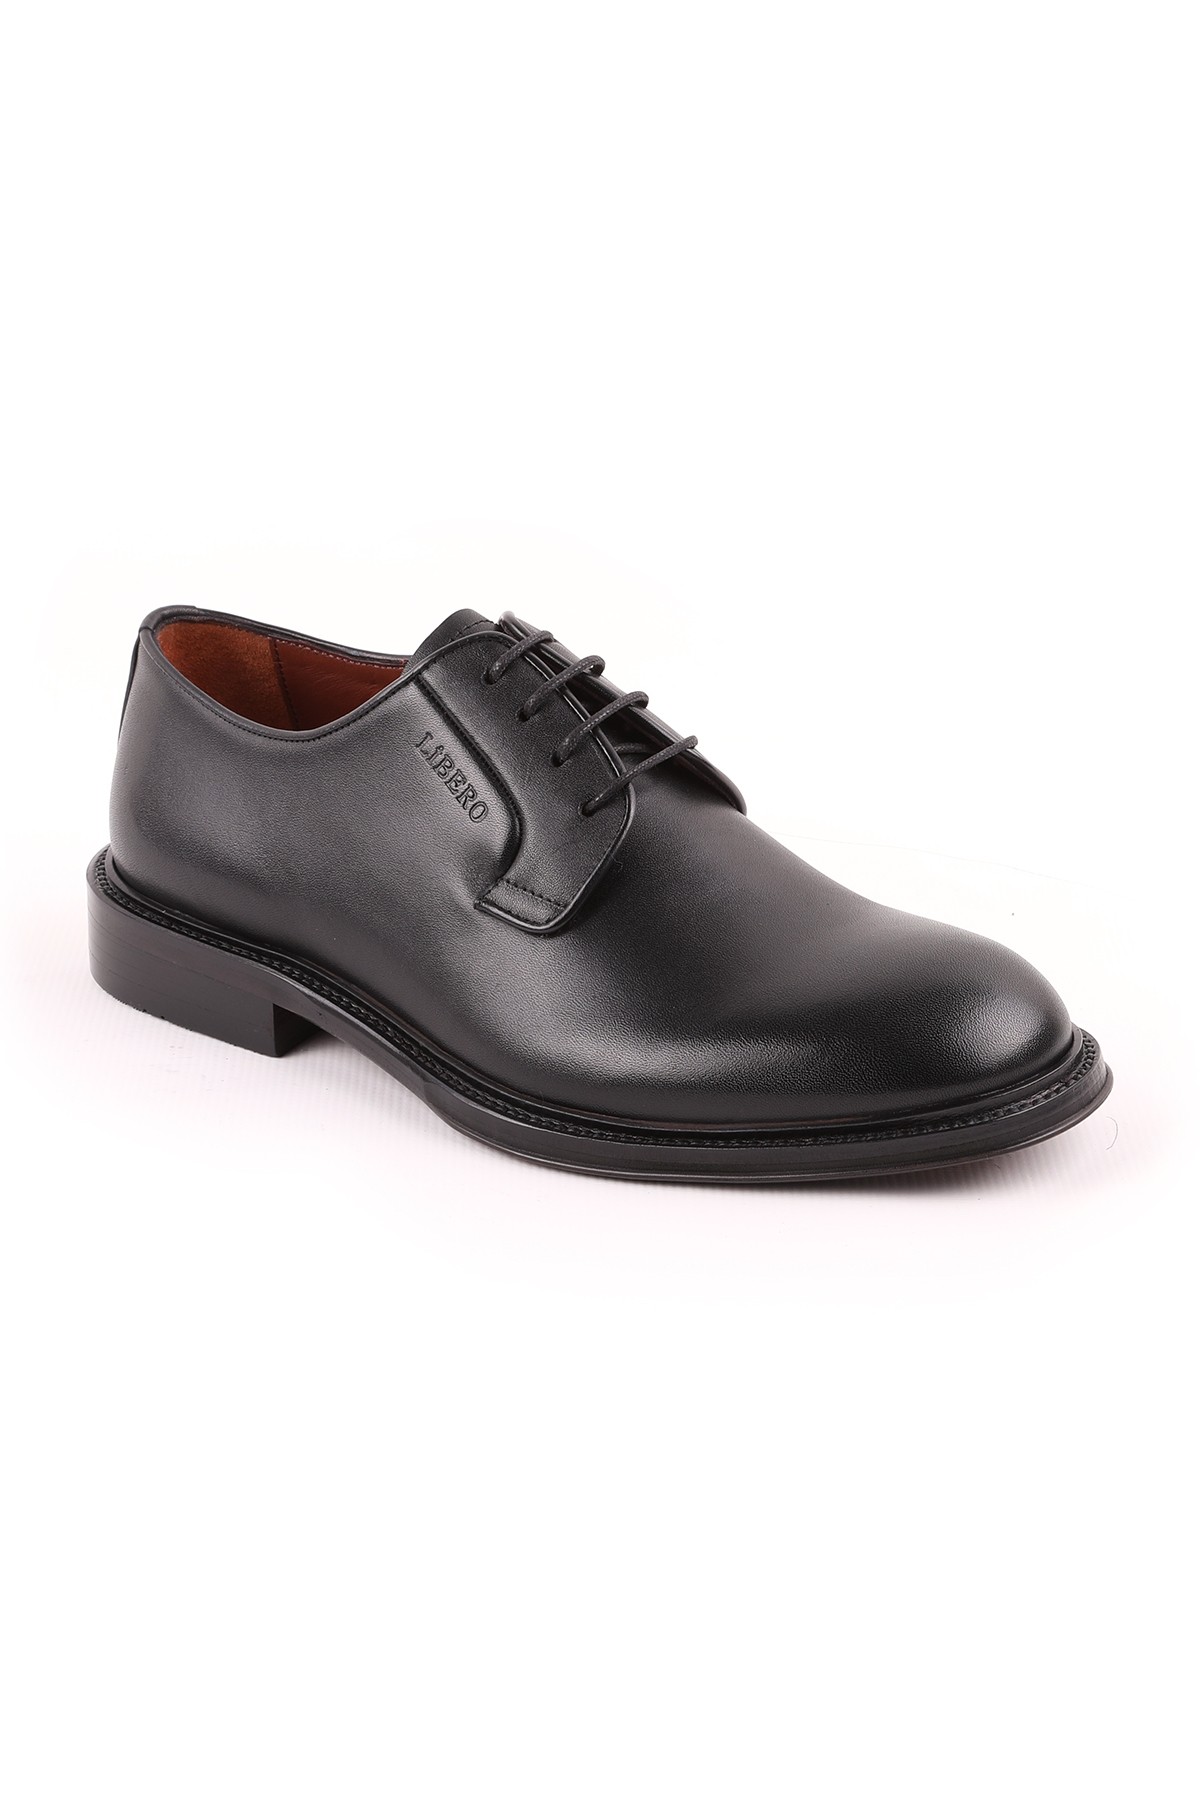 Libero L5232 Klasik Erkek Ayakkabı KAHVE - Siyah